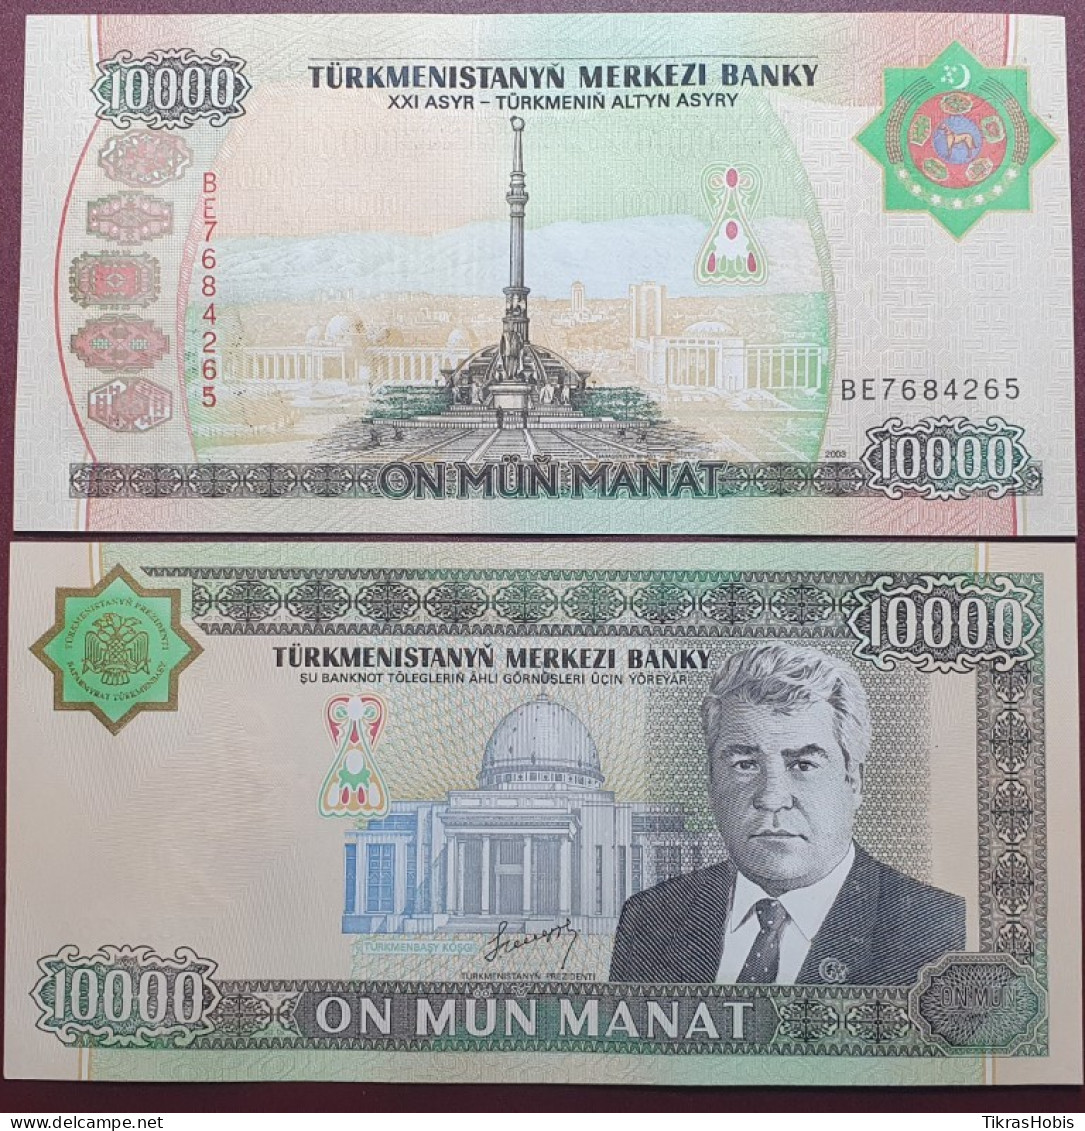 Turkmenistan 10000 Manat, 2003 P-15 - Turkmenistan